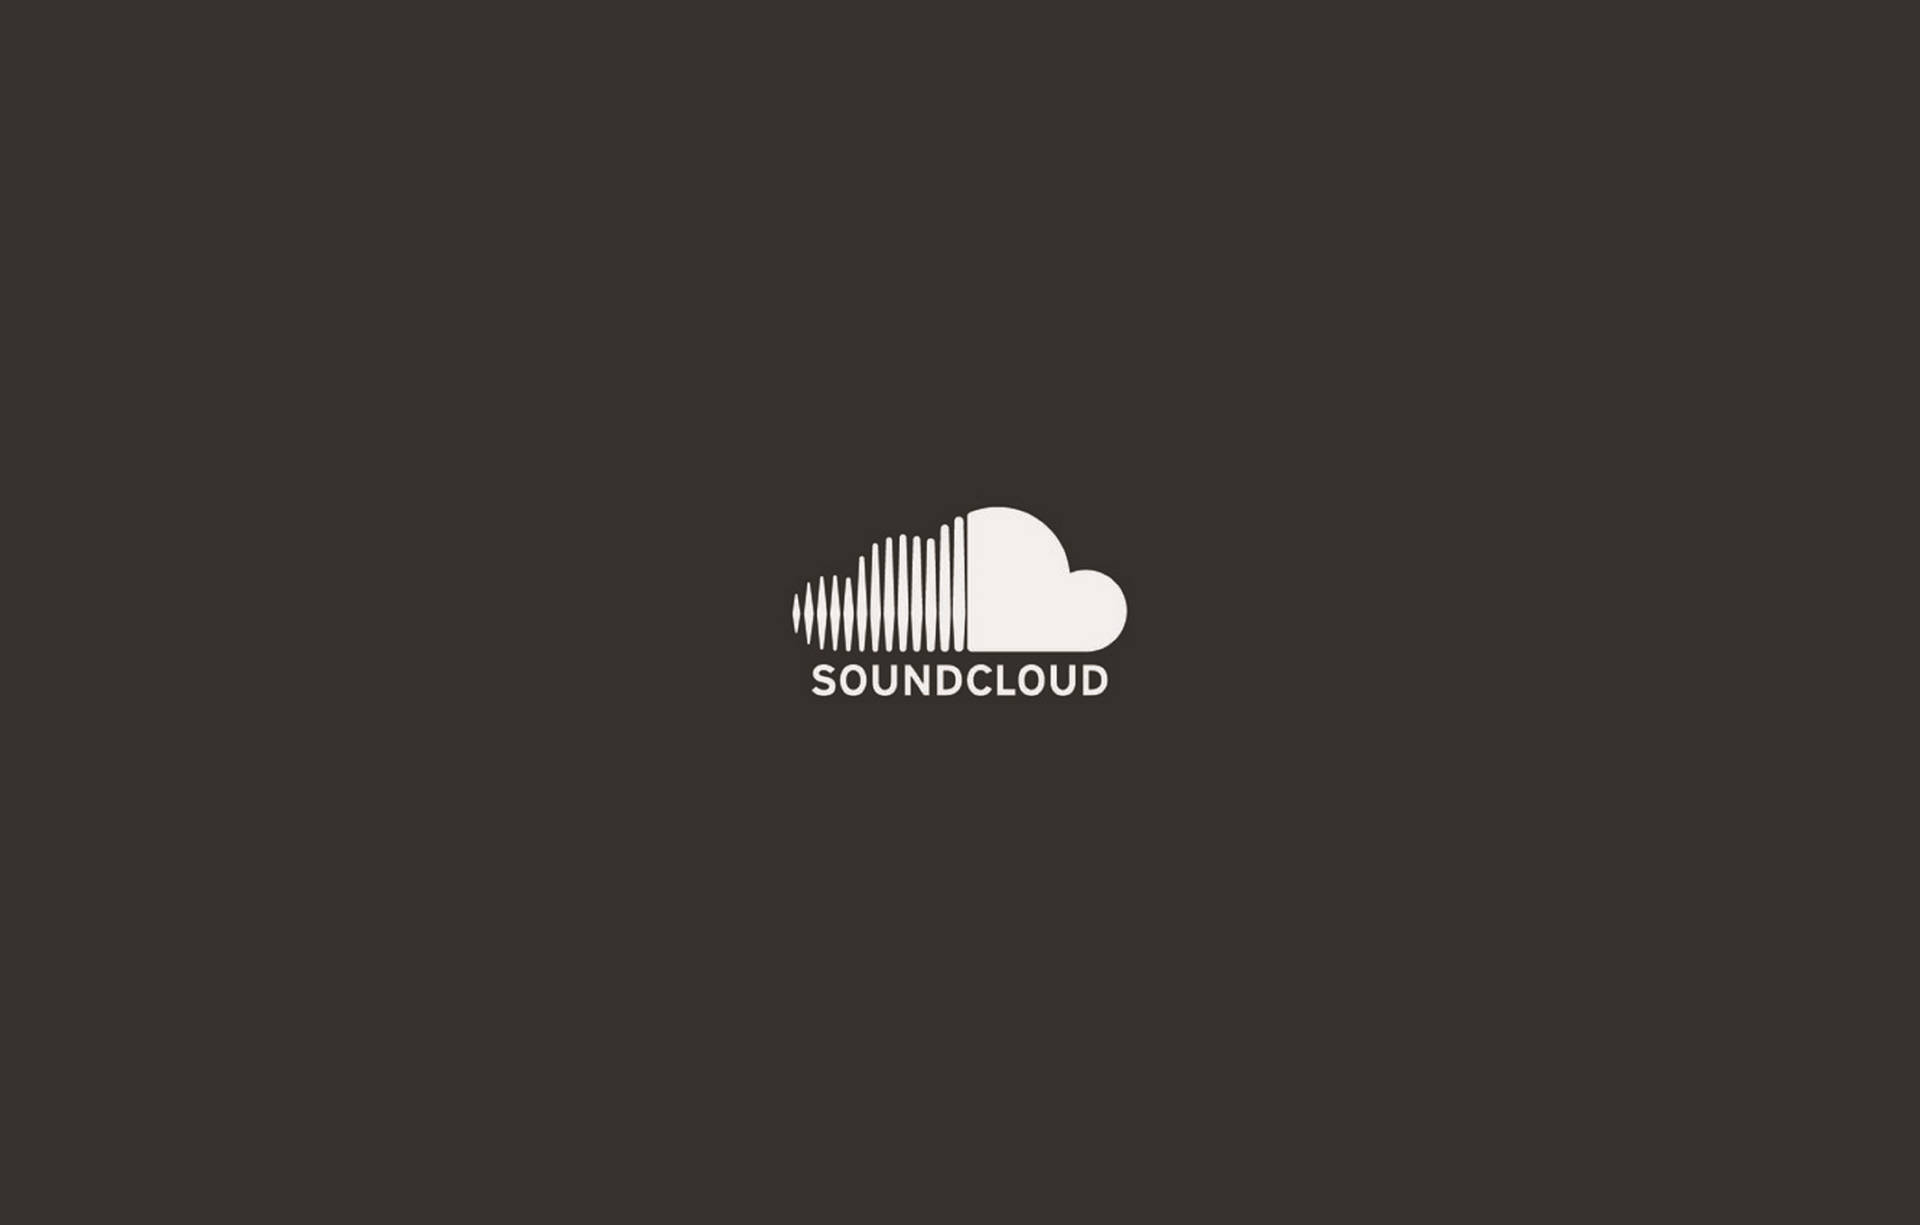 SoundCloud Audio Grayscale Wallpaper